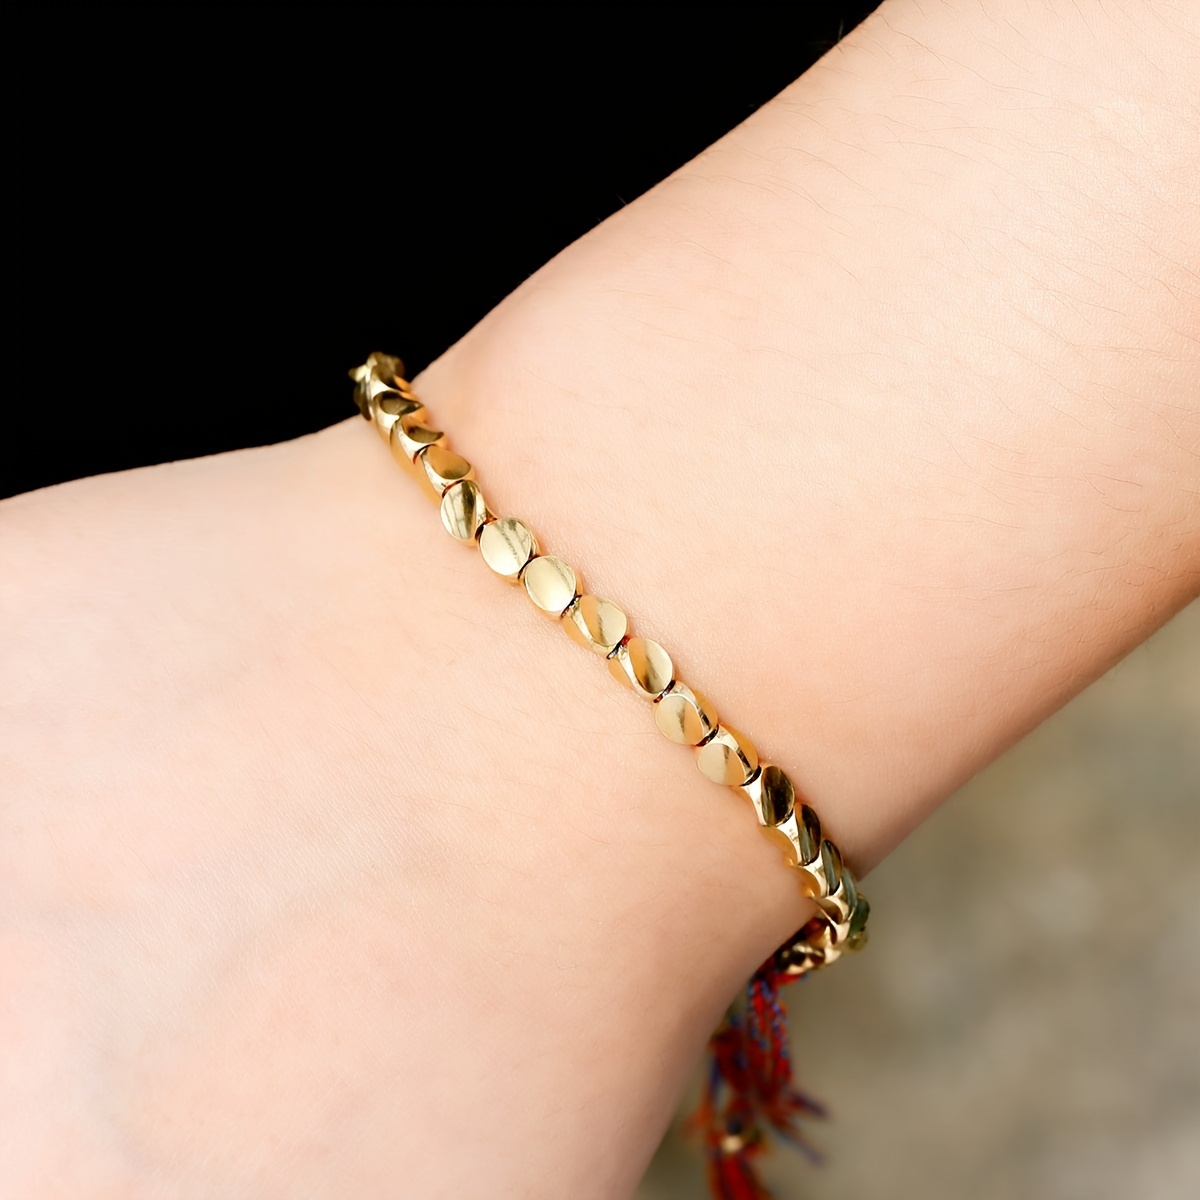 Tibetan Copper Beaded Bracelet Copper Beads Bracelet Luck Wealth Protection